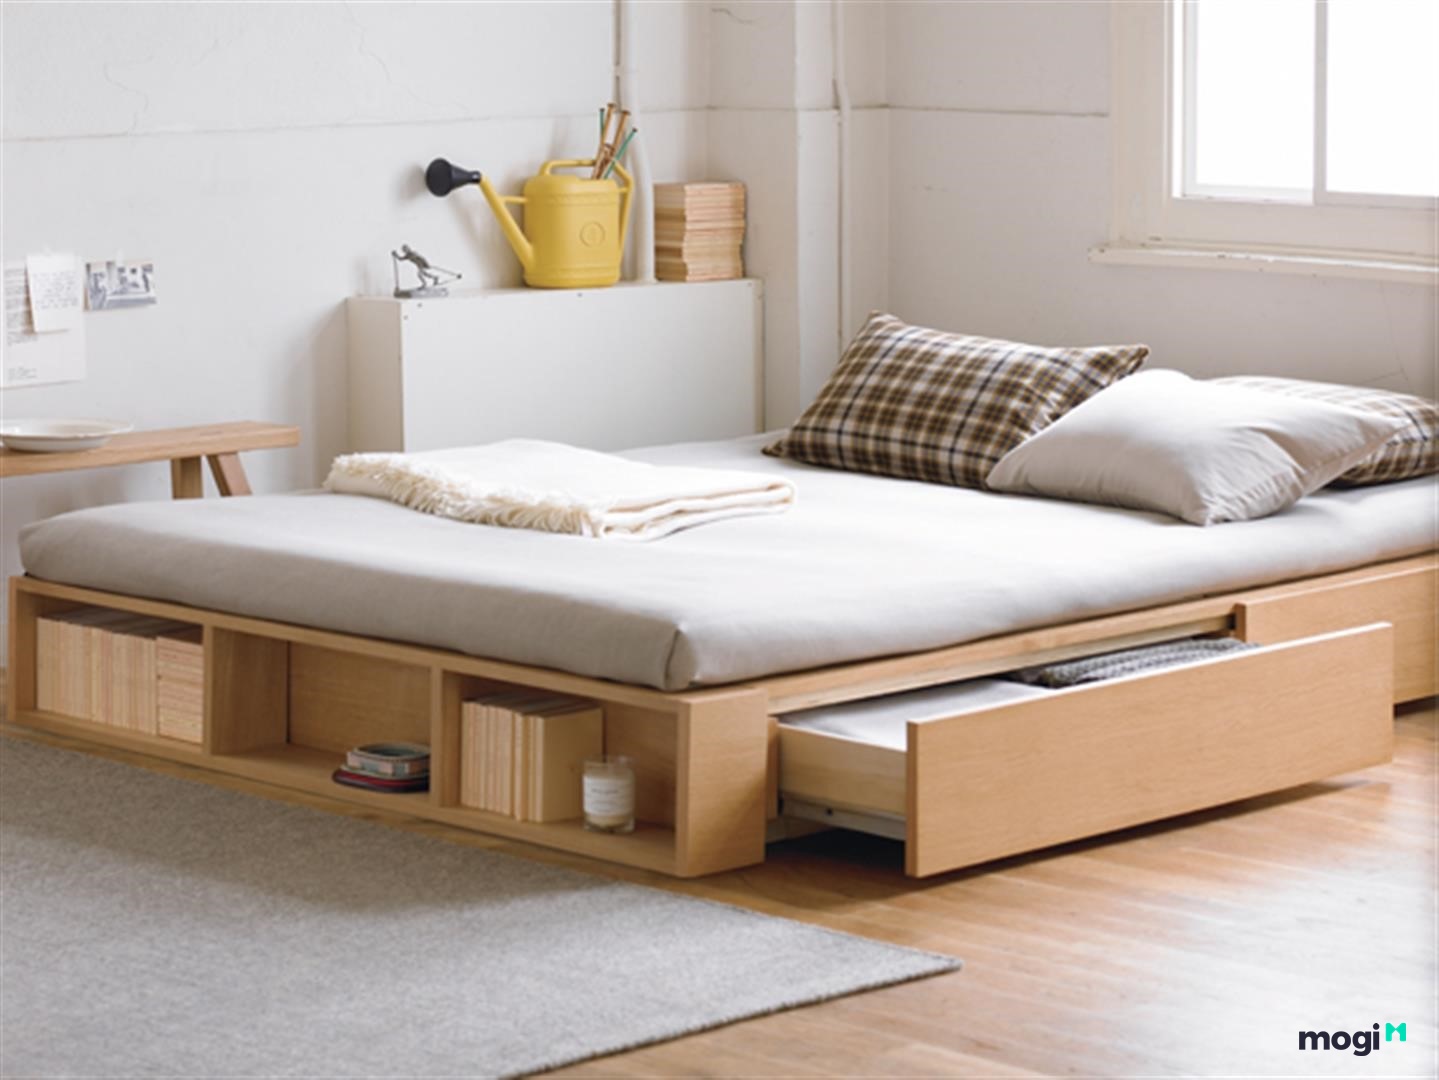 Giường có ngăn kéo giúp tăng không gian chứa đồ cho phòng ngủ nhỏ